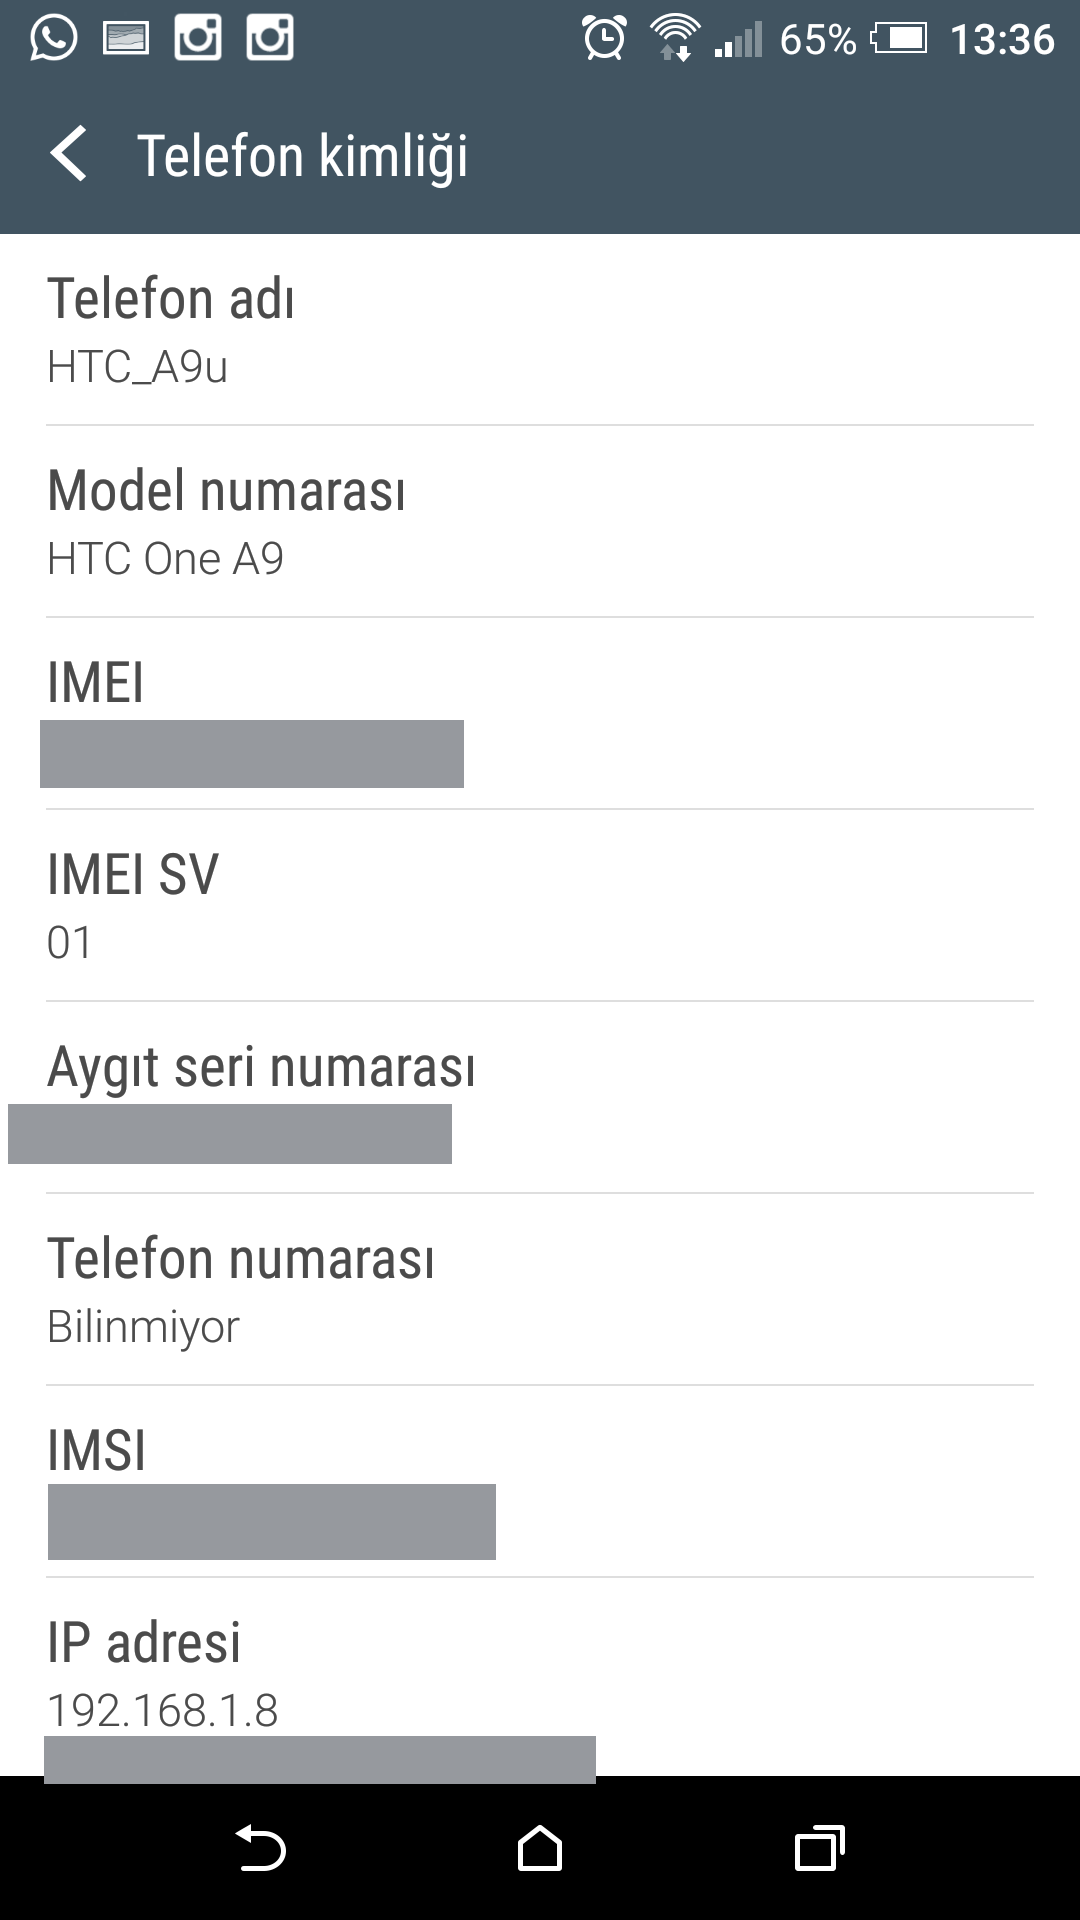  HTC One A9 Kullananlara Soru - Müzik Player Uygulaması